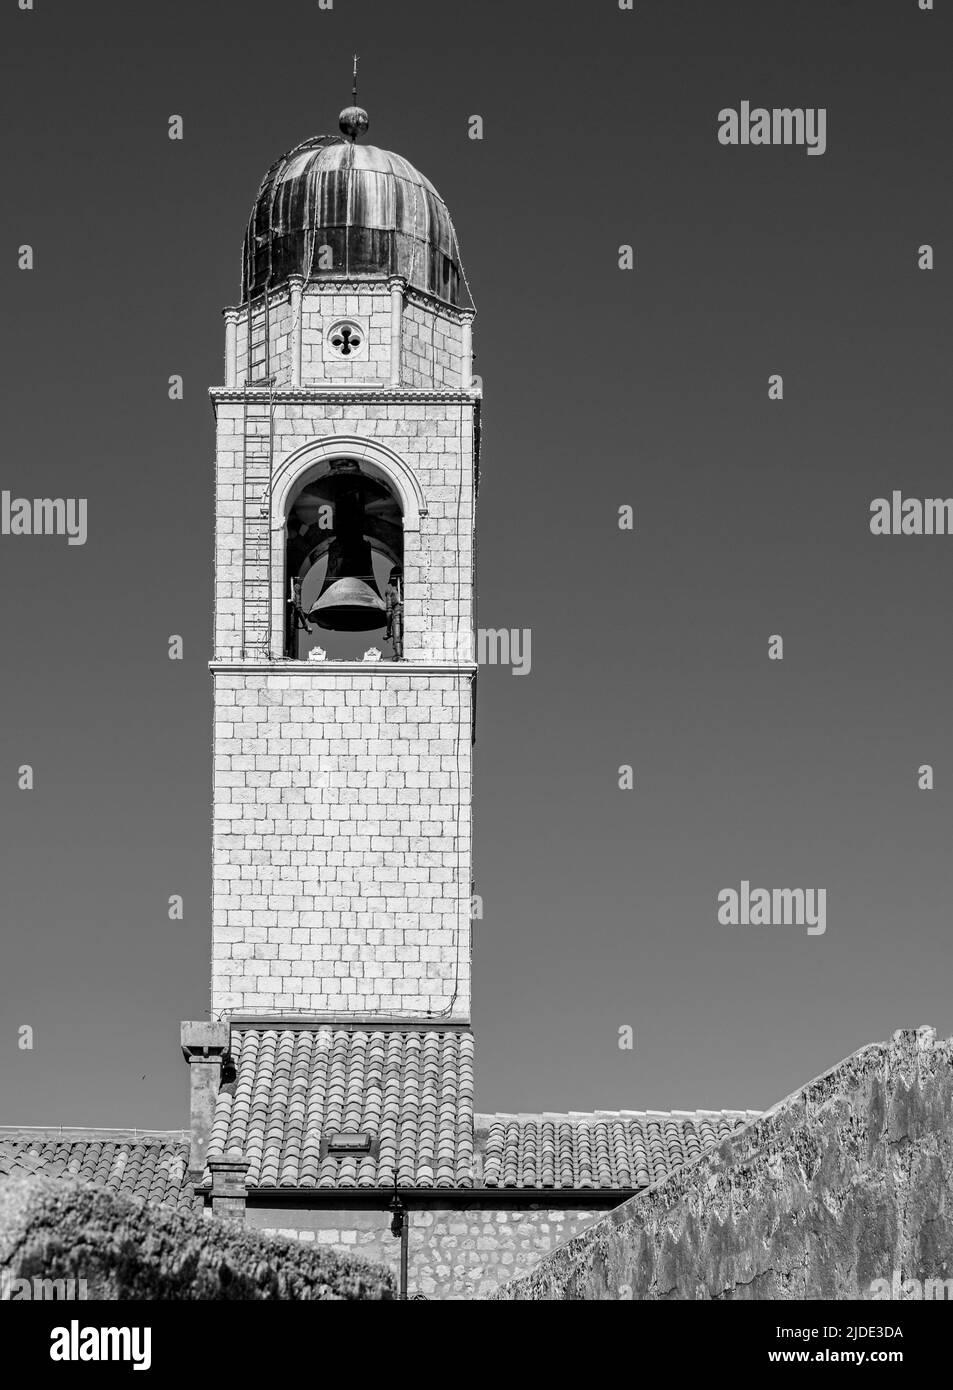 Belle présentation en noir et blanc de la tour de la cloche de Dubrovnik située sur la place Luža, la vieille ville de Dubrovnik Banque D'Images